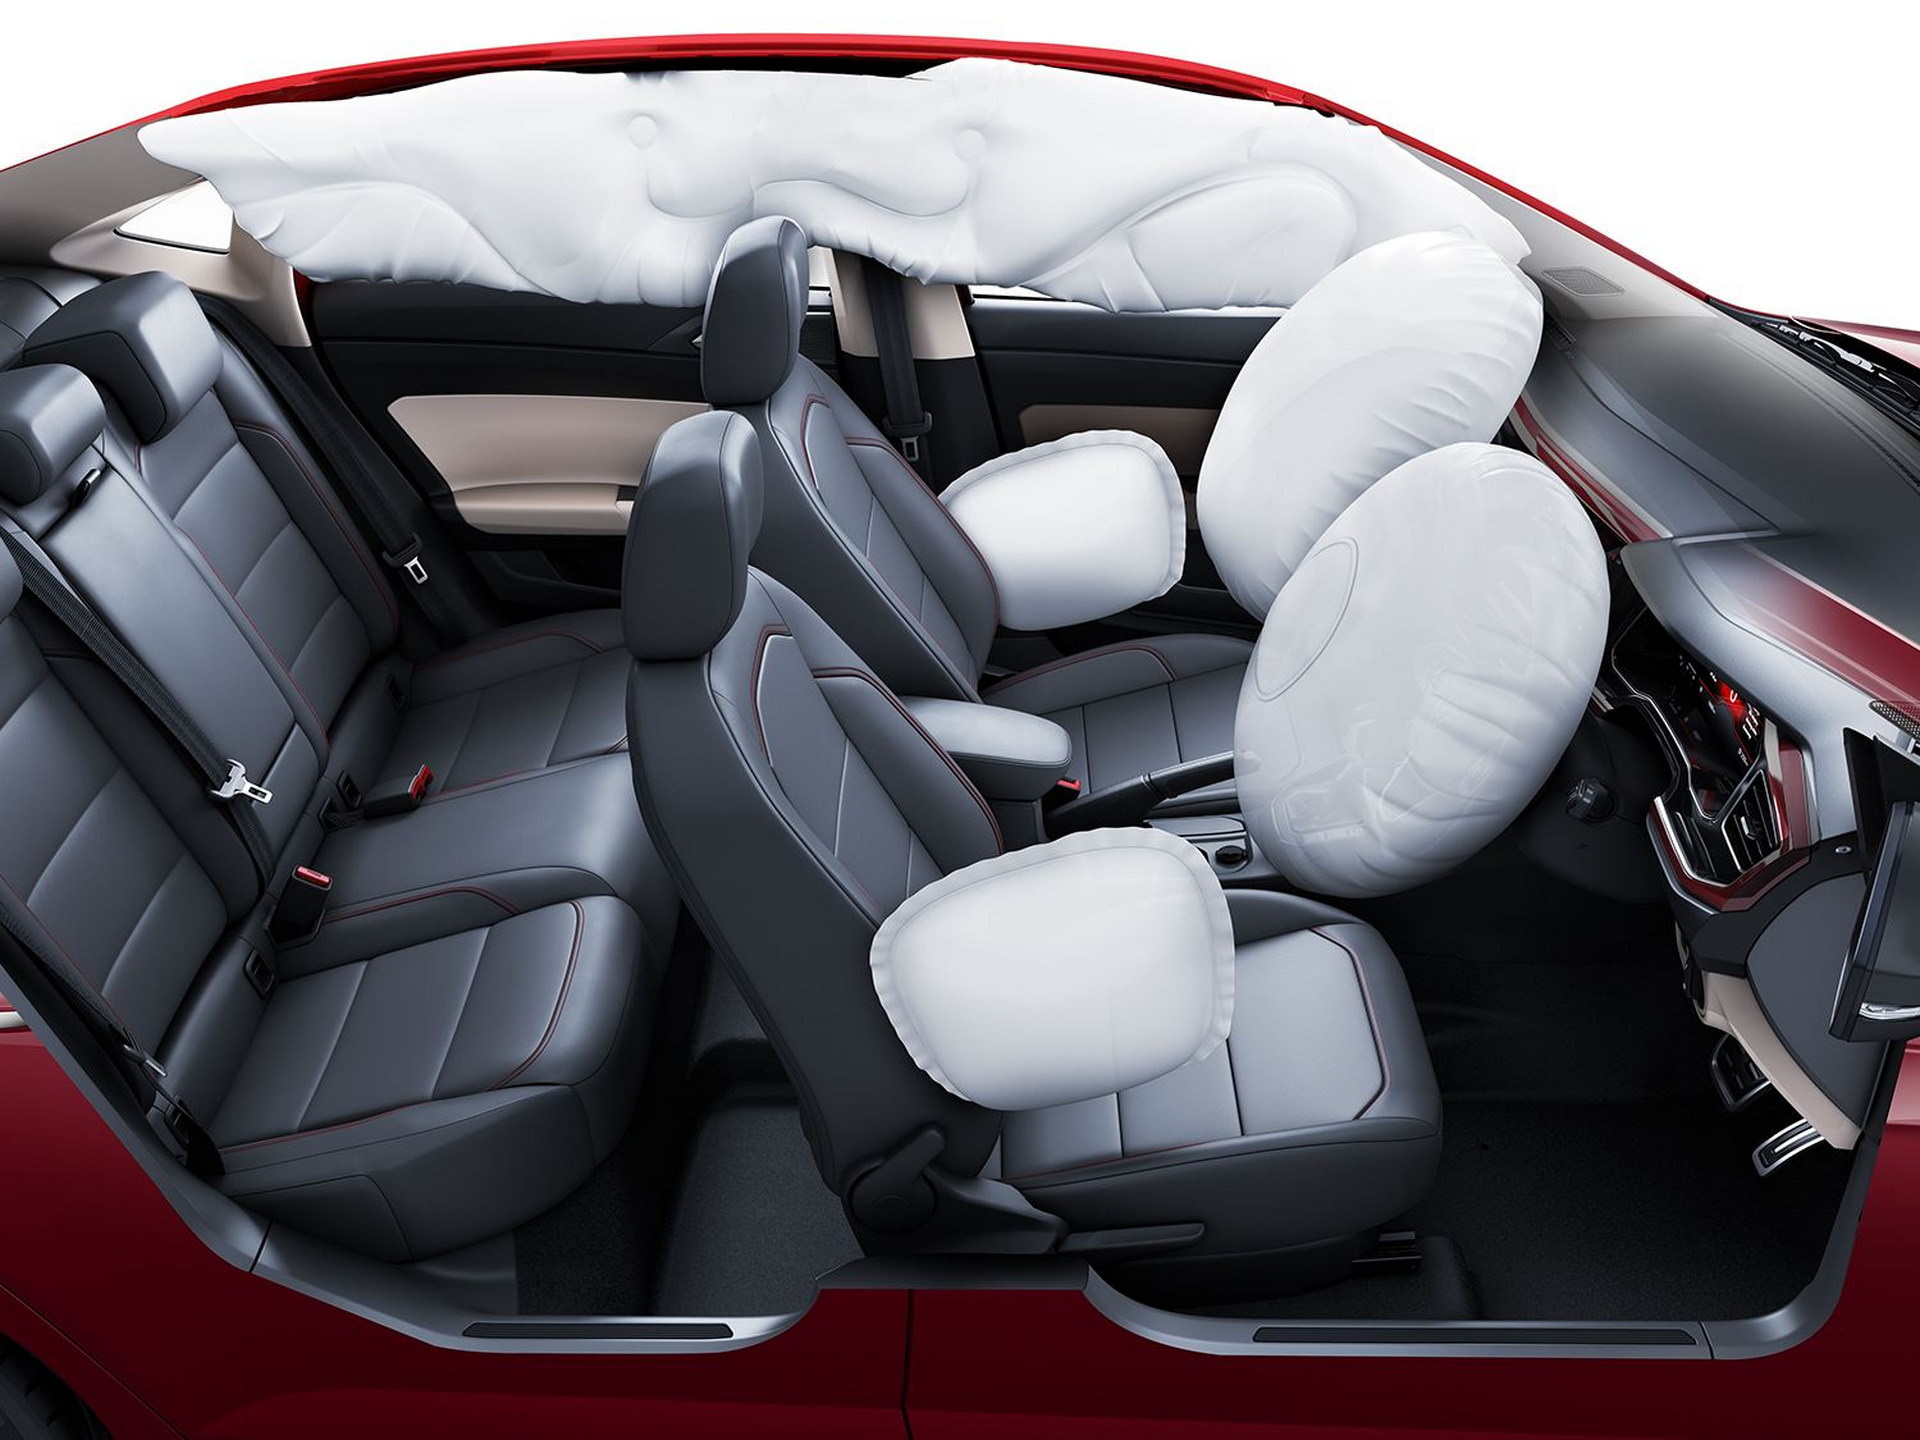 2022 Volkswagen Virtus sedan tanıtıldı: İşte tasarımı ve özellikleri